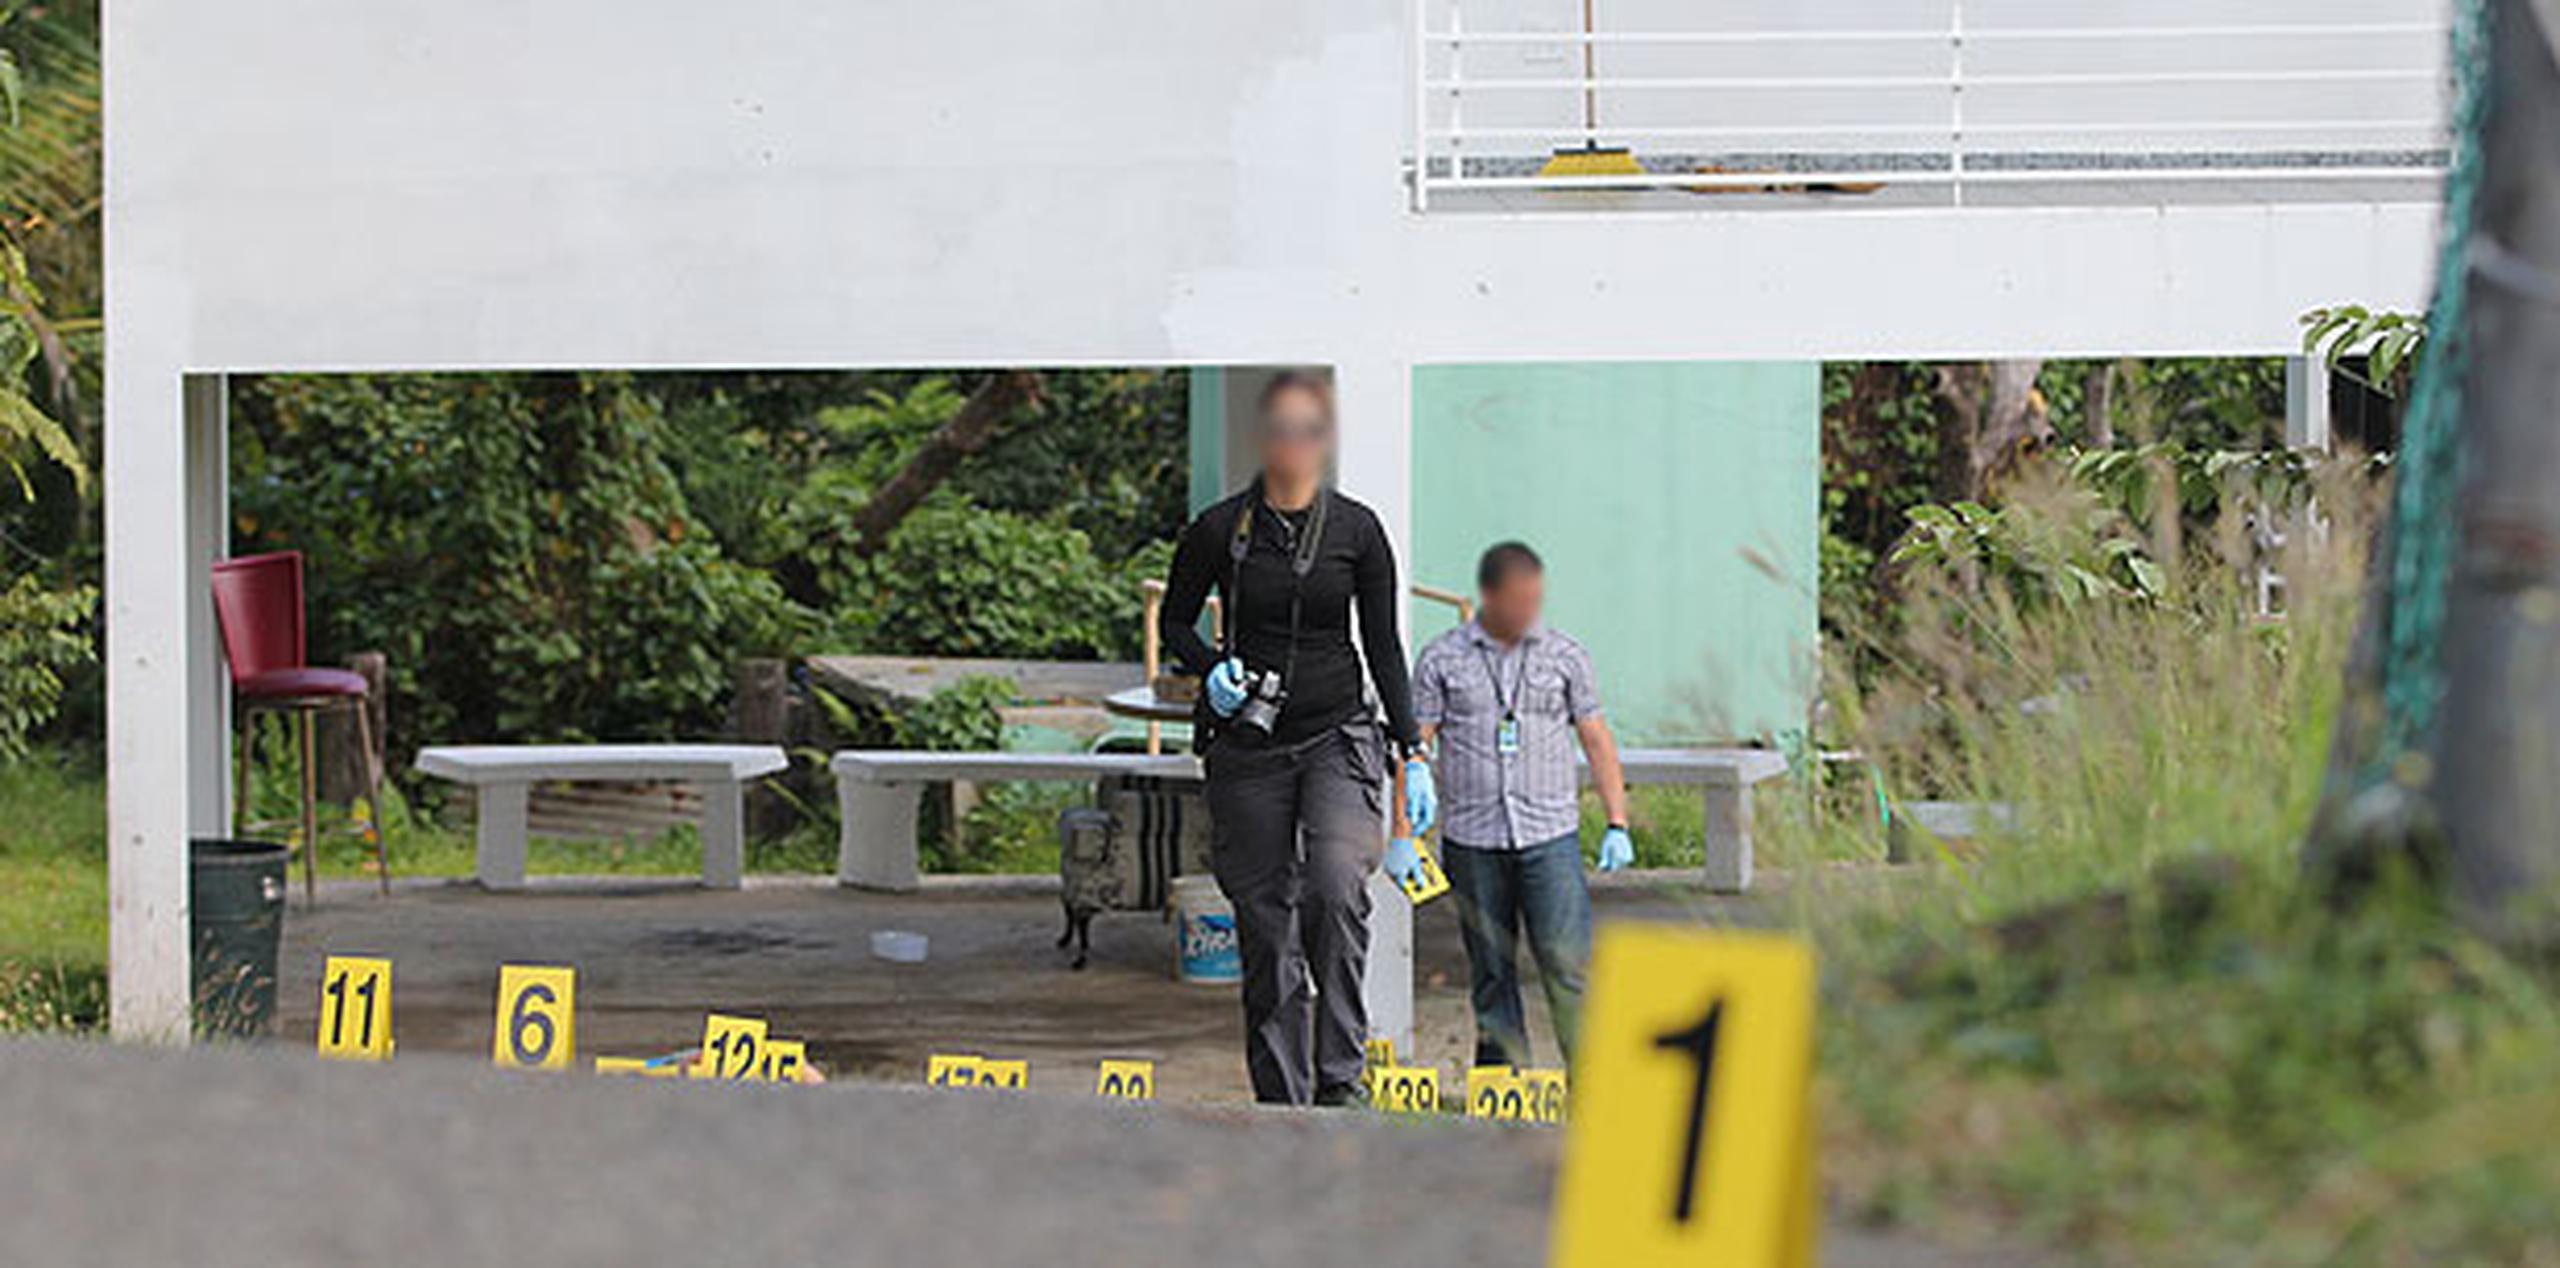 Los sicarios que le dispararon frente a su residencia en la carretera PR-959 del barrio Ciénaga Ata de Río Grande. (alex.figueroa@gfrmedia.com)